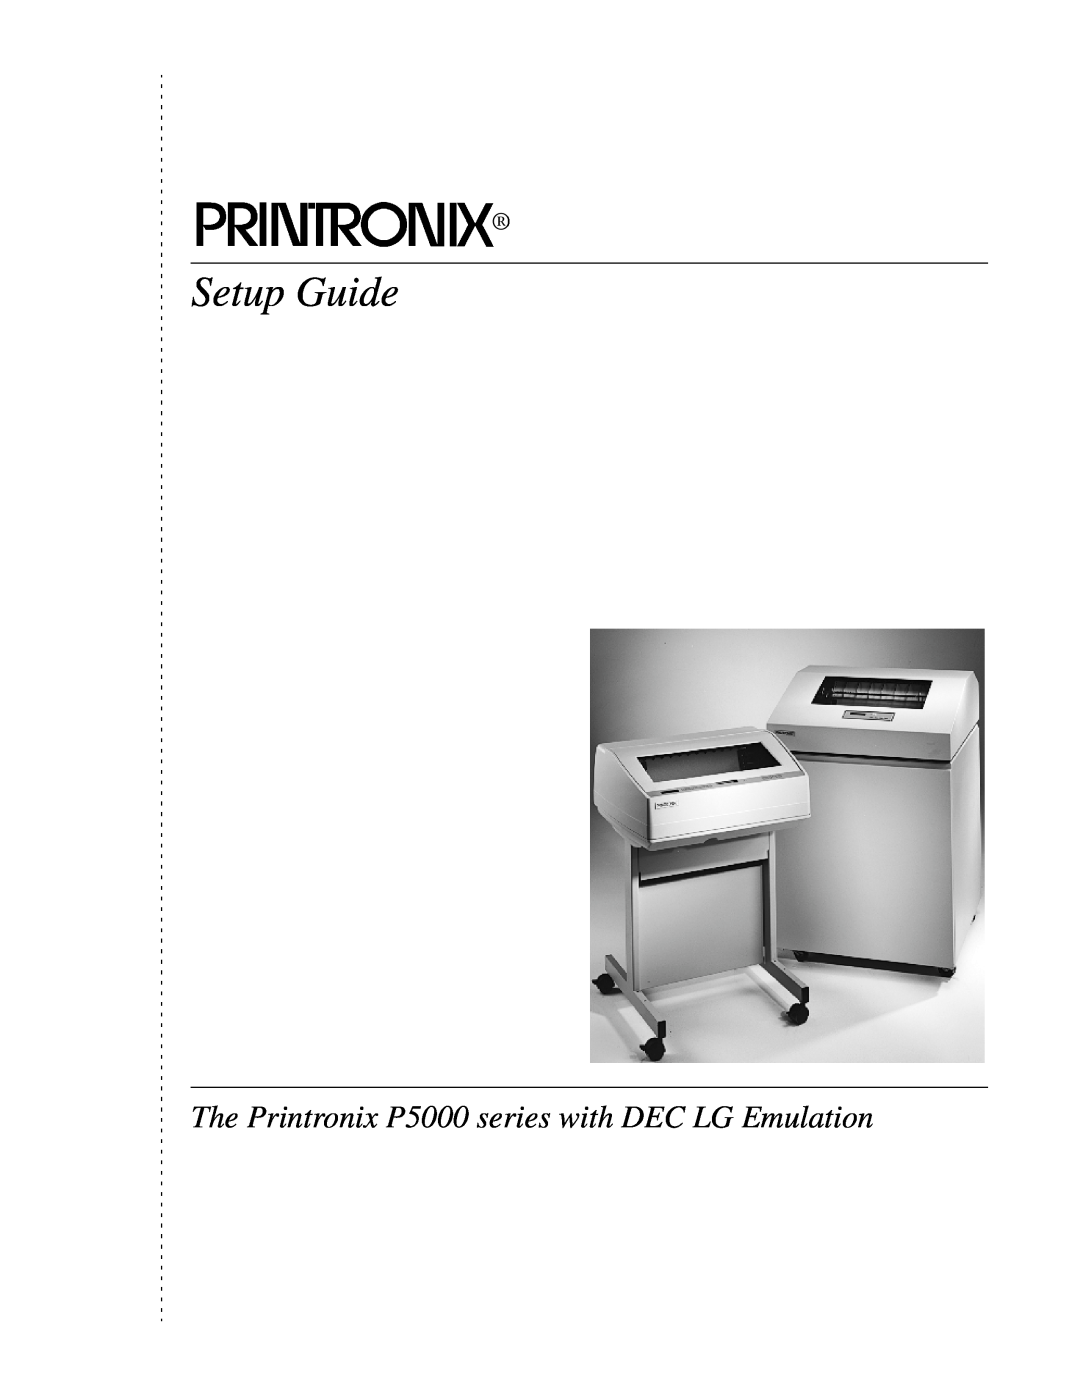 Compaq P5000 Series setup guide Setup Guide, The Printronix P5000 series with DEC LG Emulation 